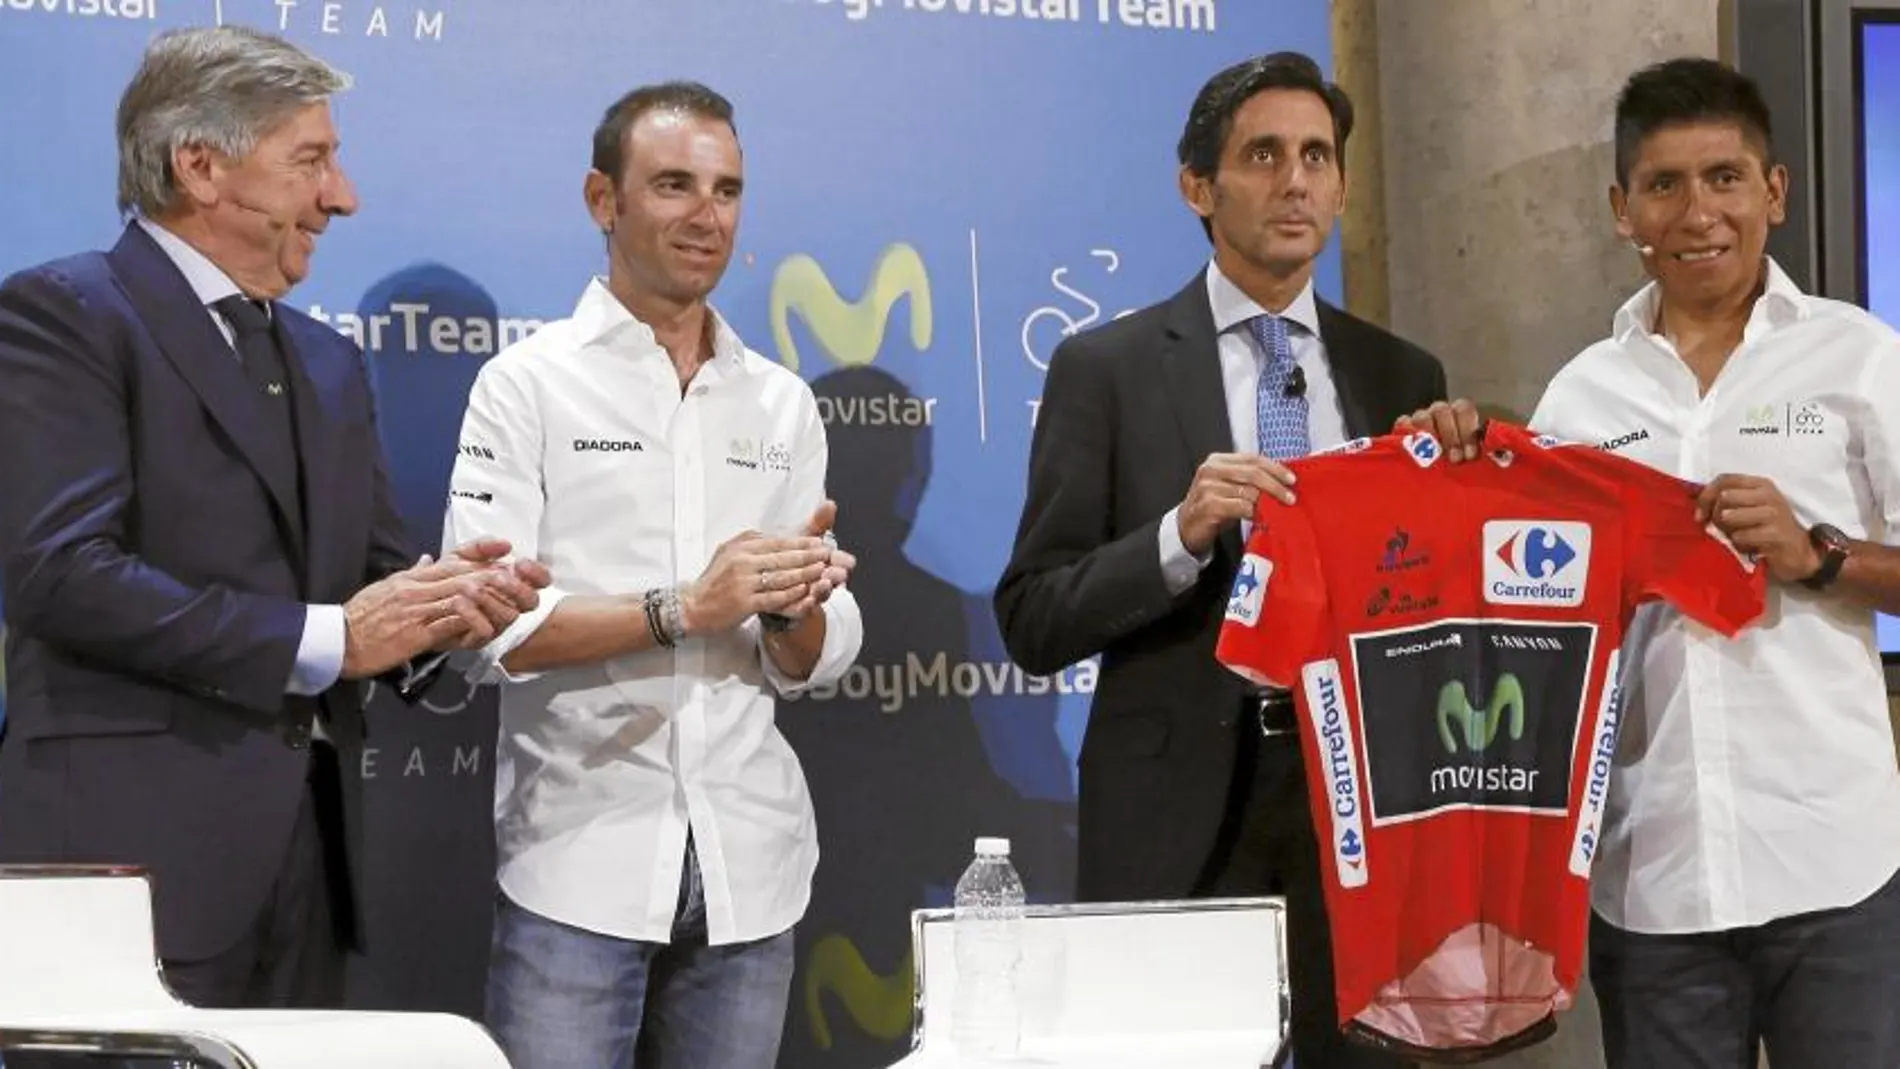 Nairo hace entrega del maillot rojo al presidente de Telefónica en presencia de Eusebio Unzué y Alejandro Valverde